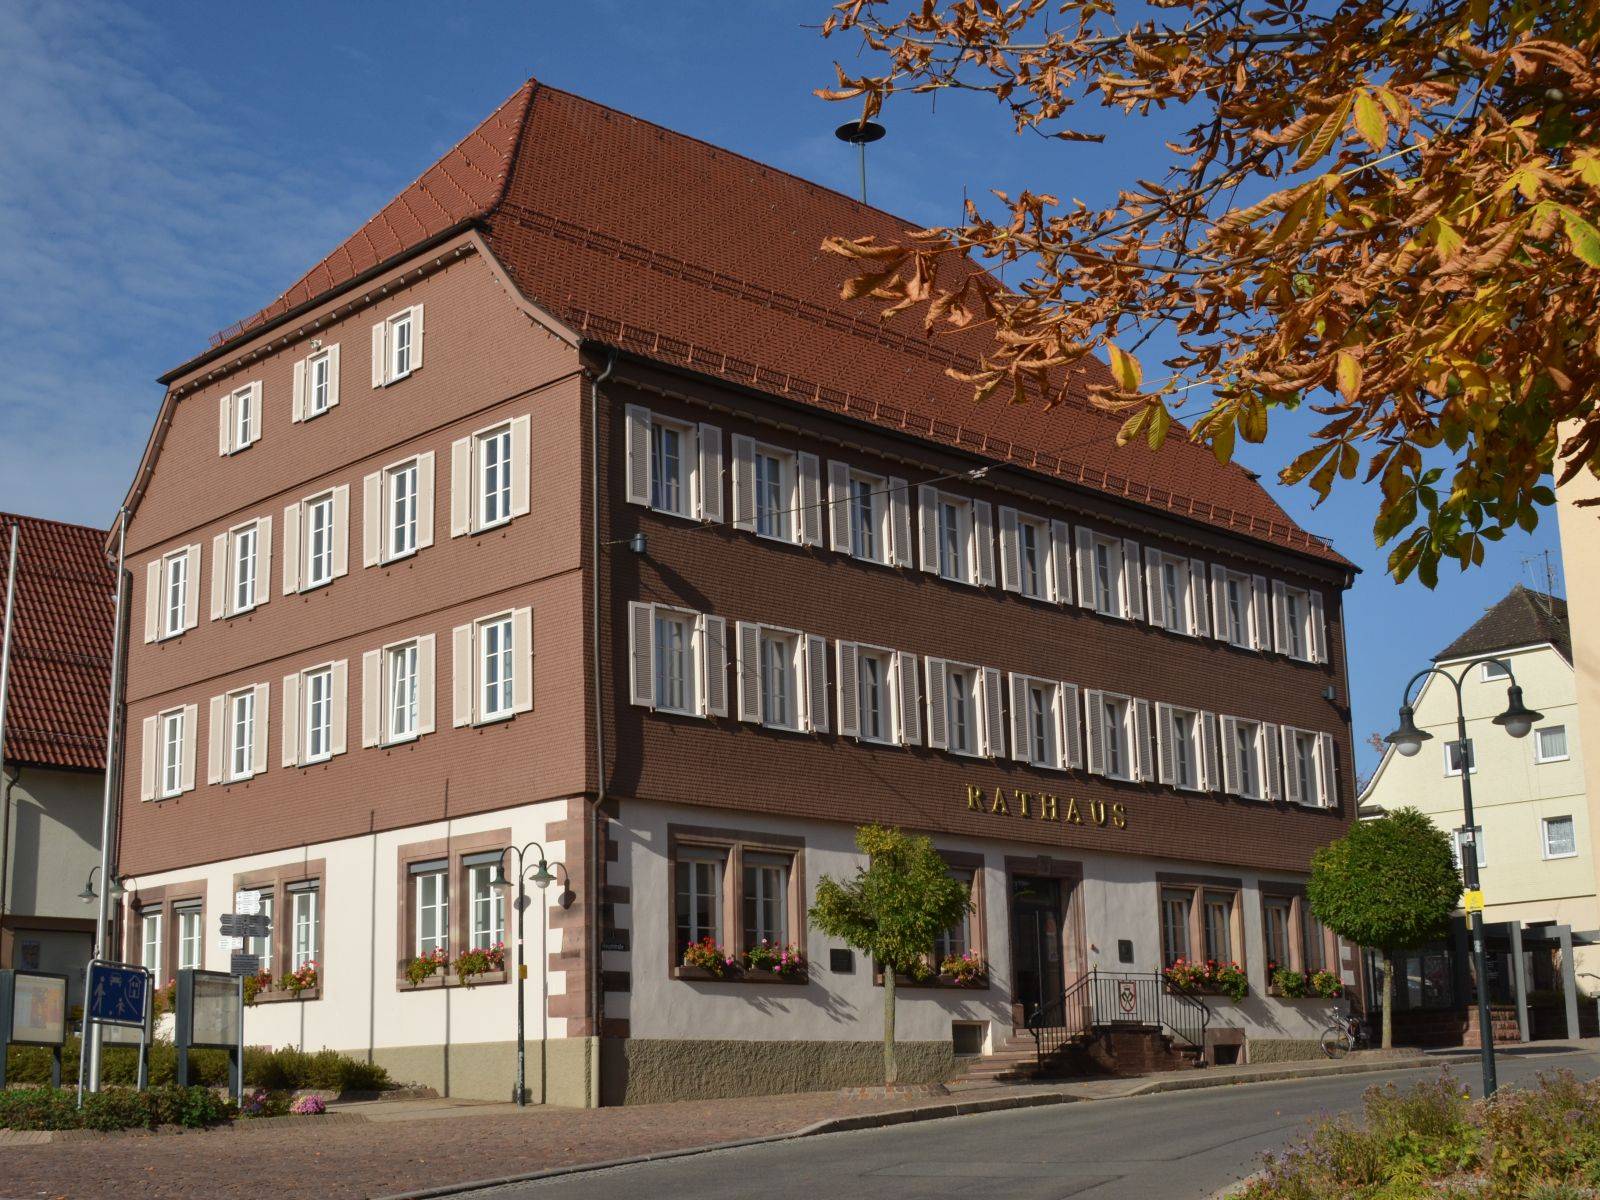                                                     Rathaus Pfalzgrafenweiler                                    